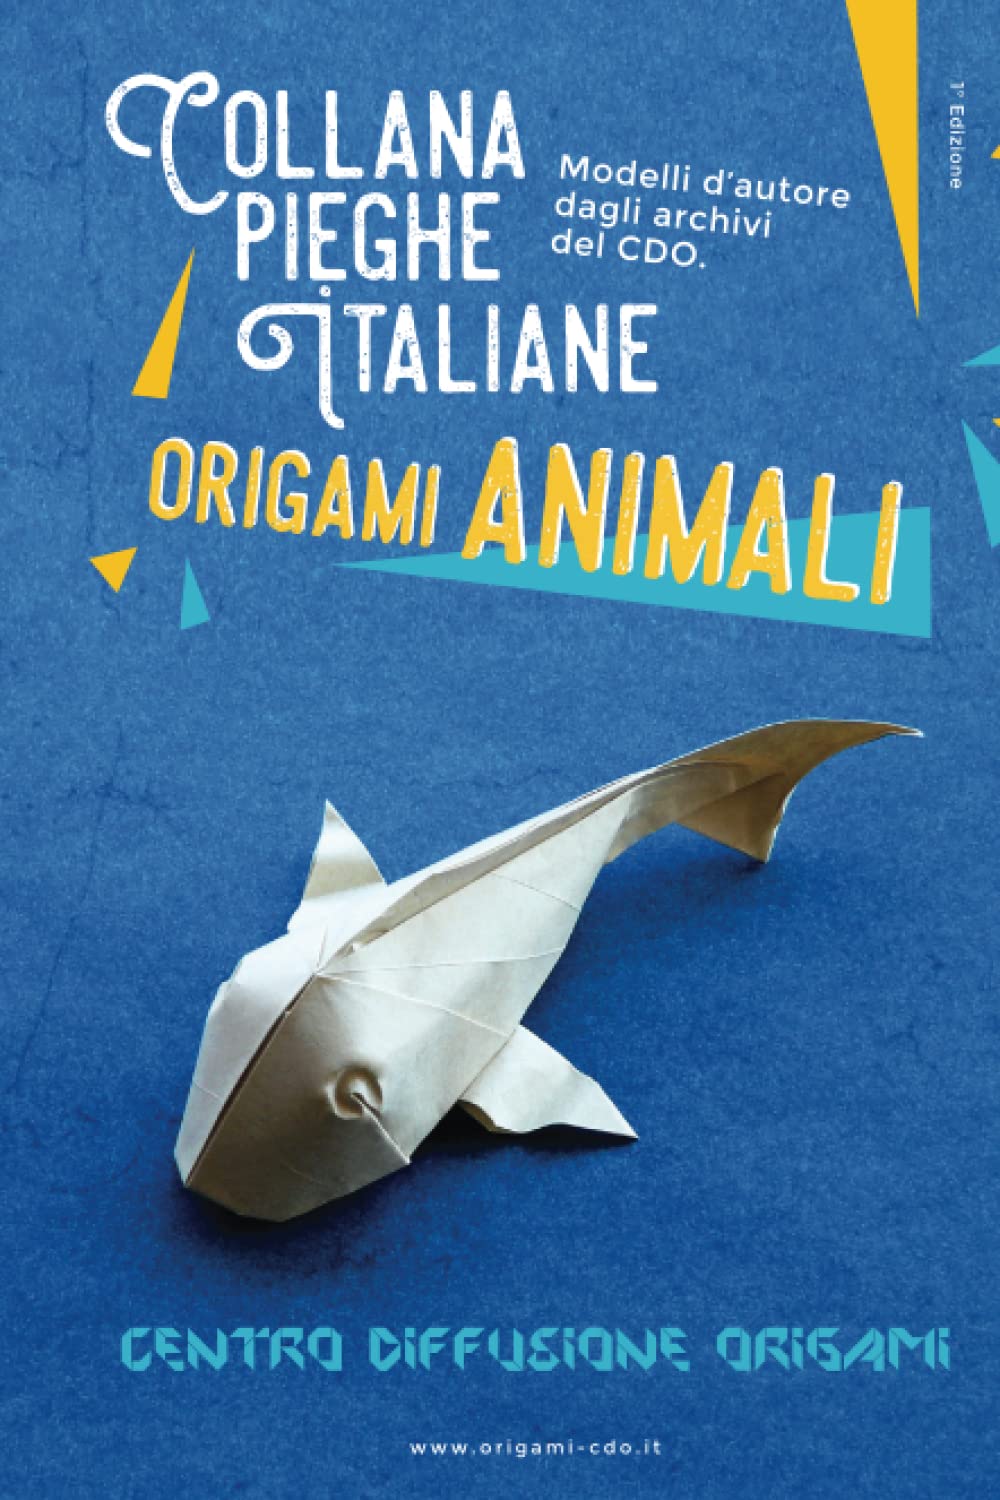 Collana pieghe Italiane - origami ANIMALI : page 142.